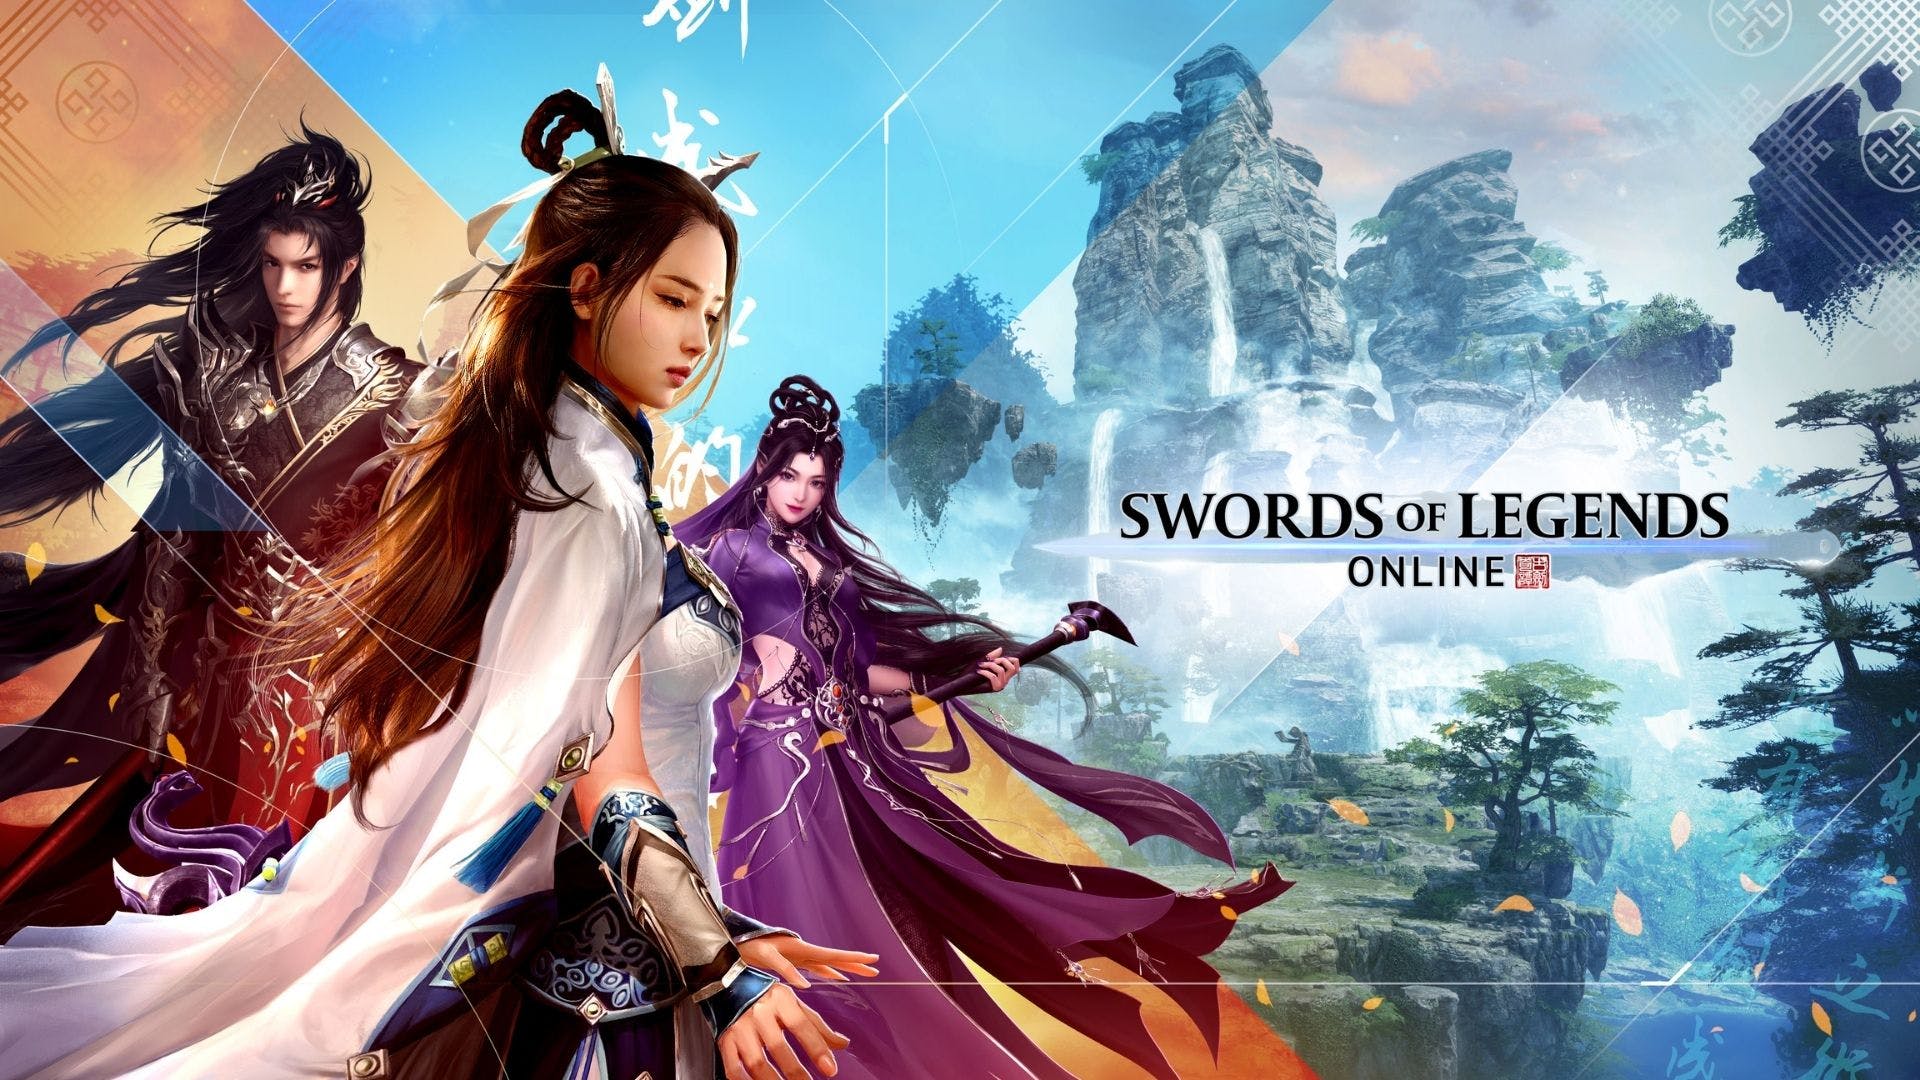 sword-of-legends-online-splash Swords of Legends Online - PC (Steam) Review